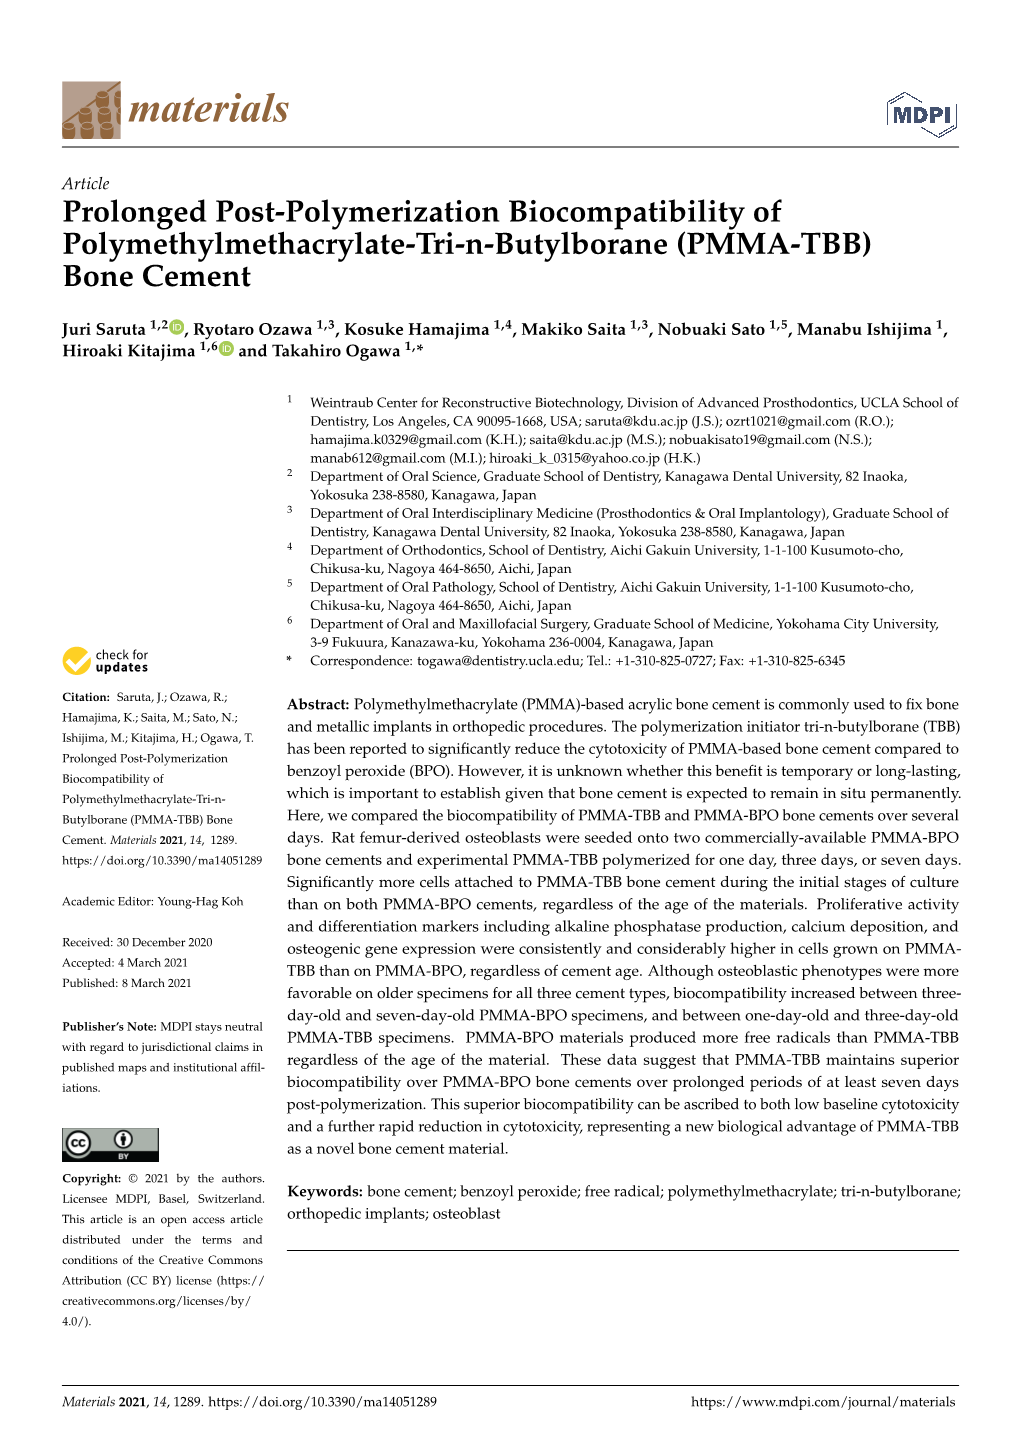 Prolonged Post-Polymerization Biocompatibility of Polymethylmethacrylate-Tri-N-Butylborane (PMMA-TBB) Bone Cement